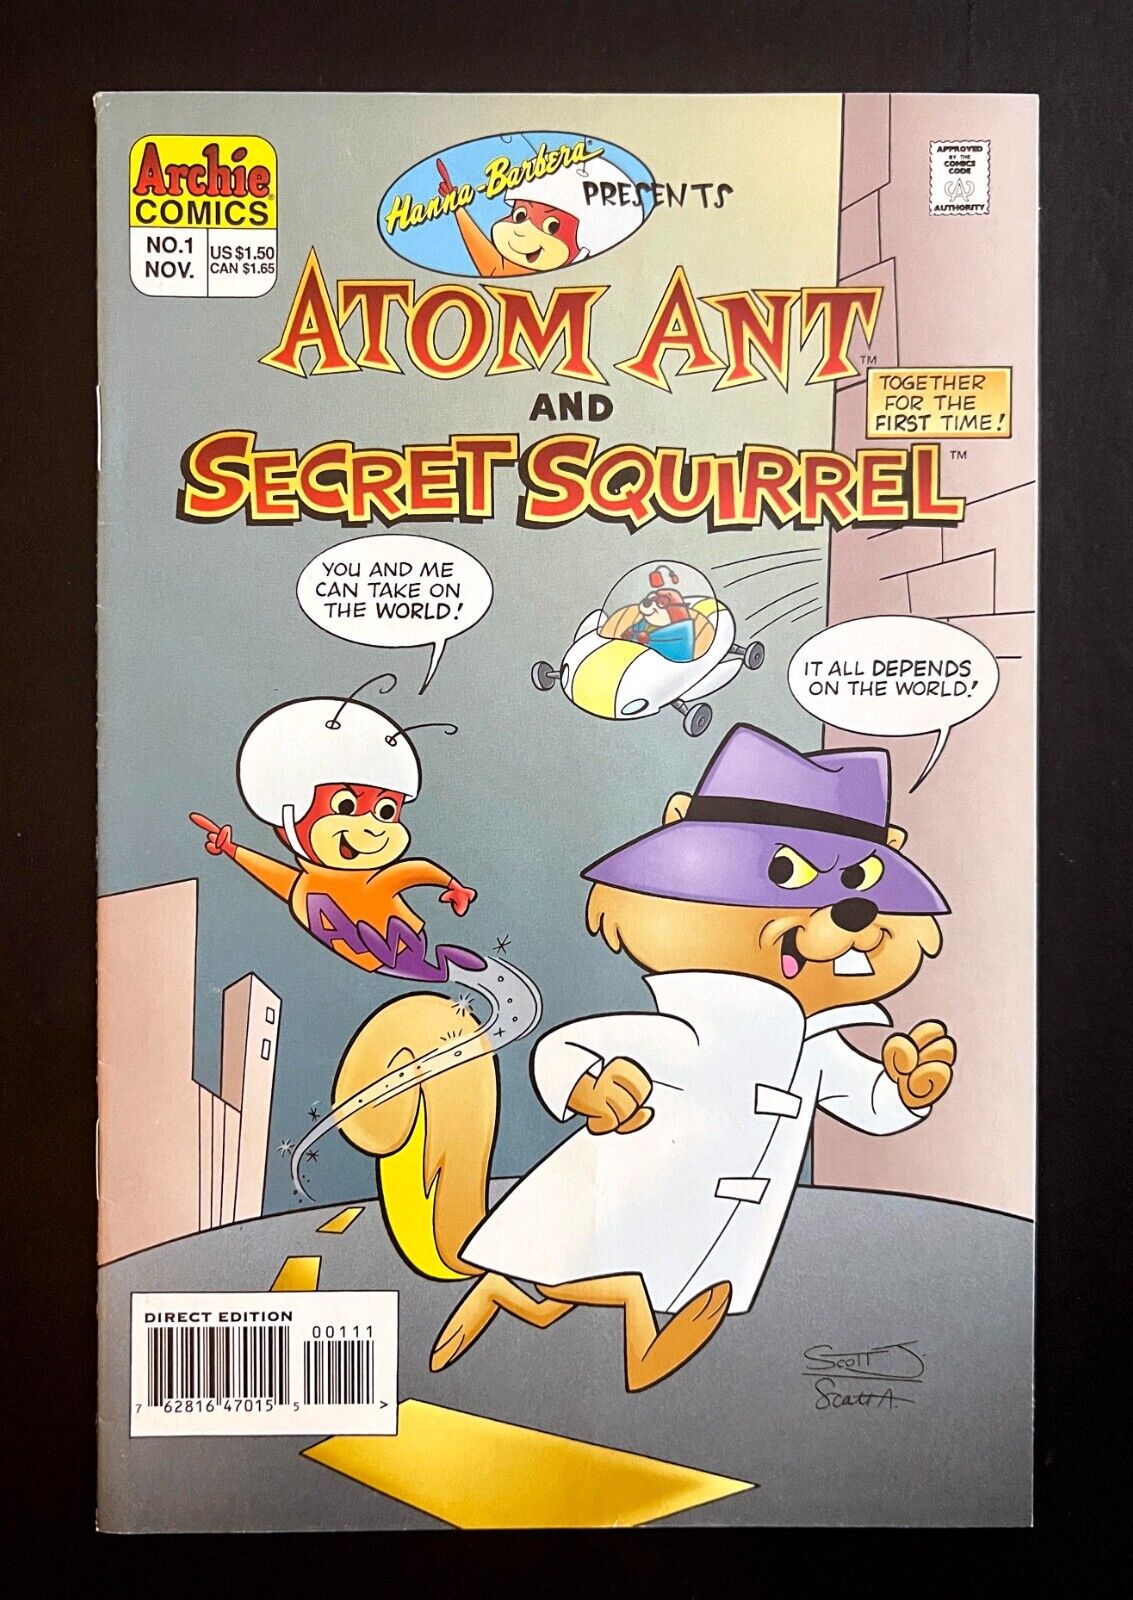 ATOM ANT AND SECRET SQUIRREL #1 Hi-Grade Archie Comics 1995